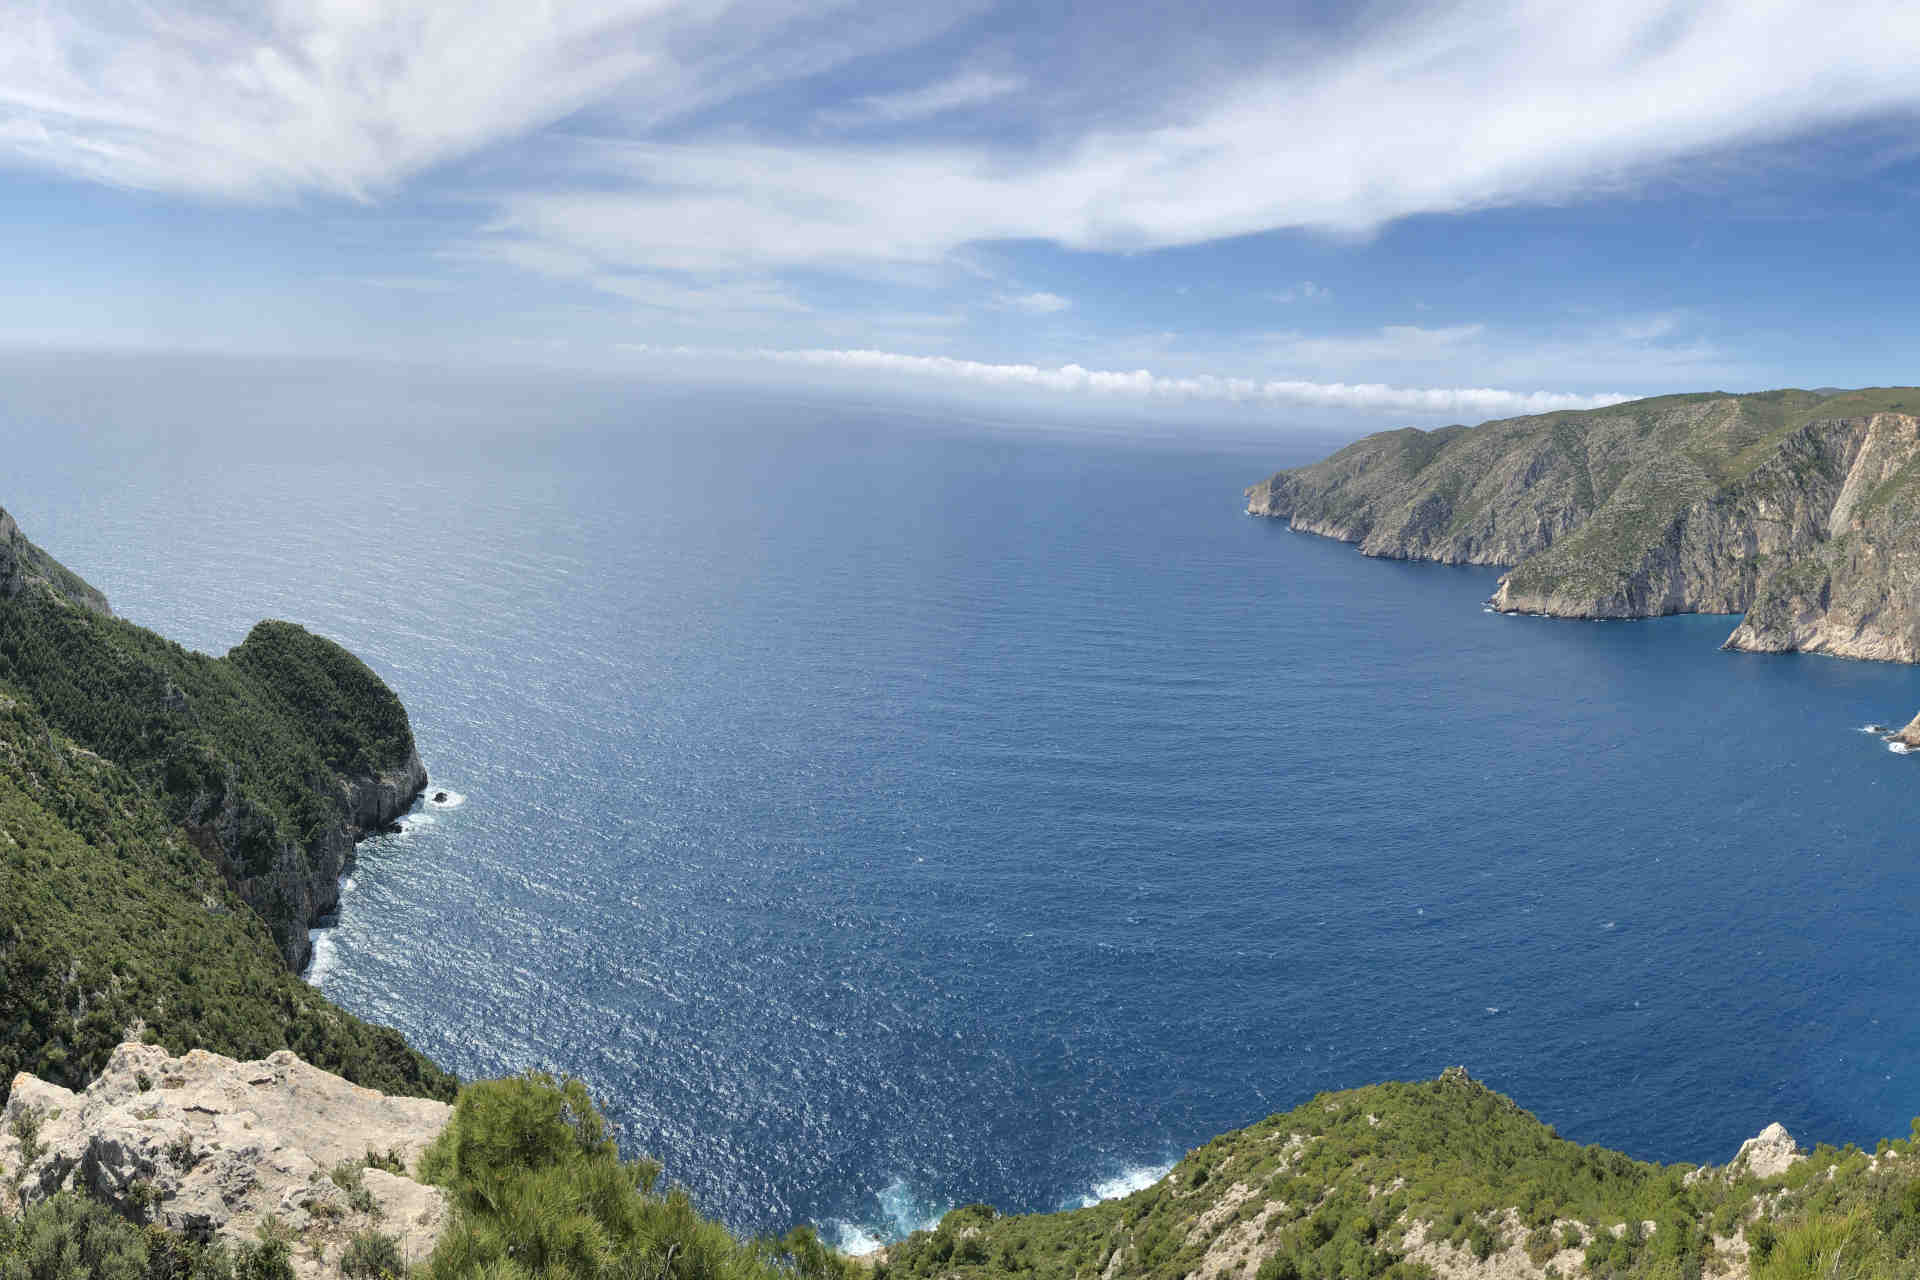 Yunani akan mendirikan dua Taman Laut Nasional baru